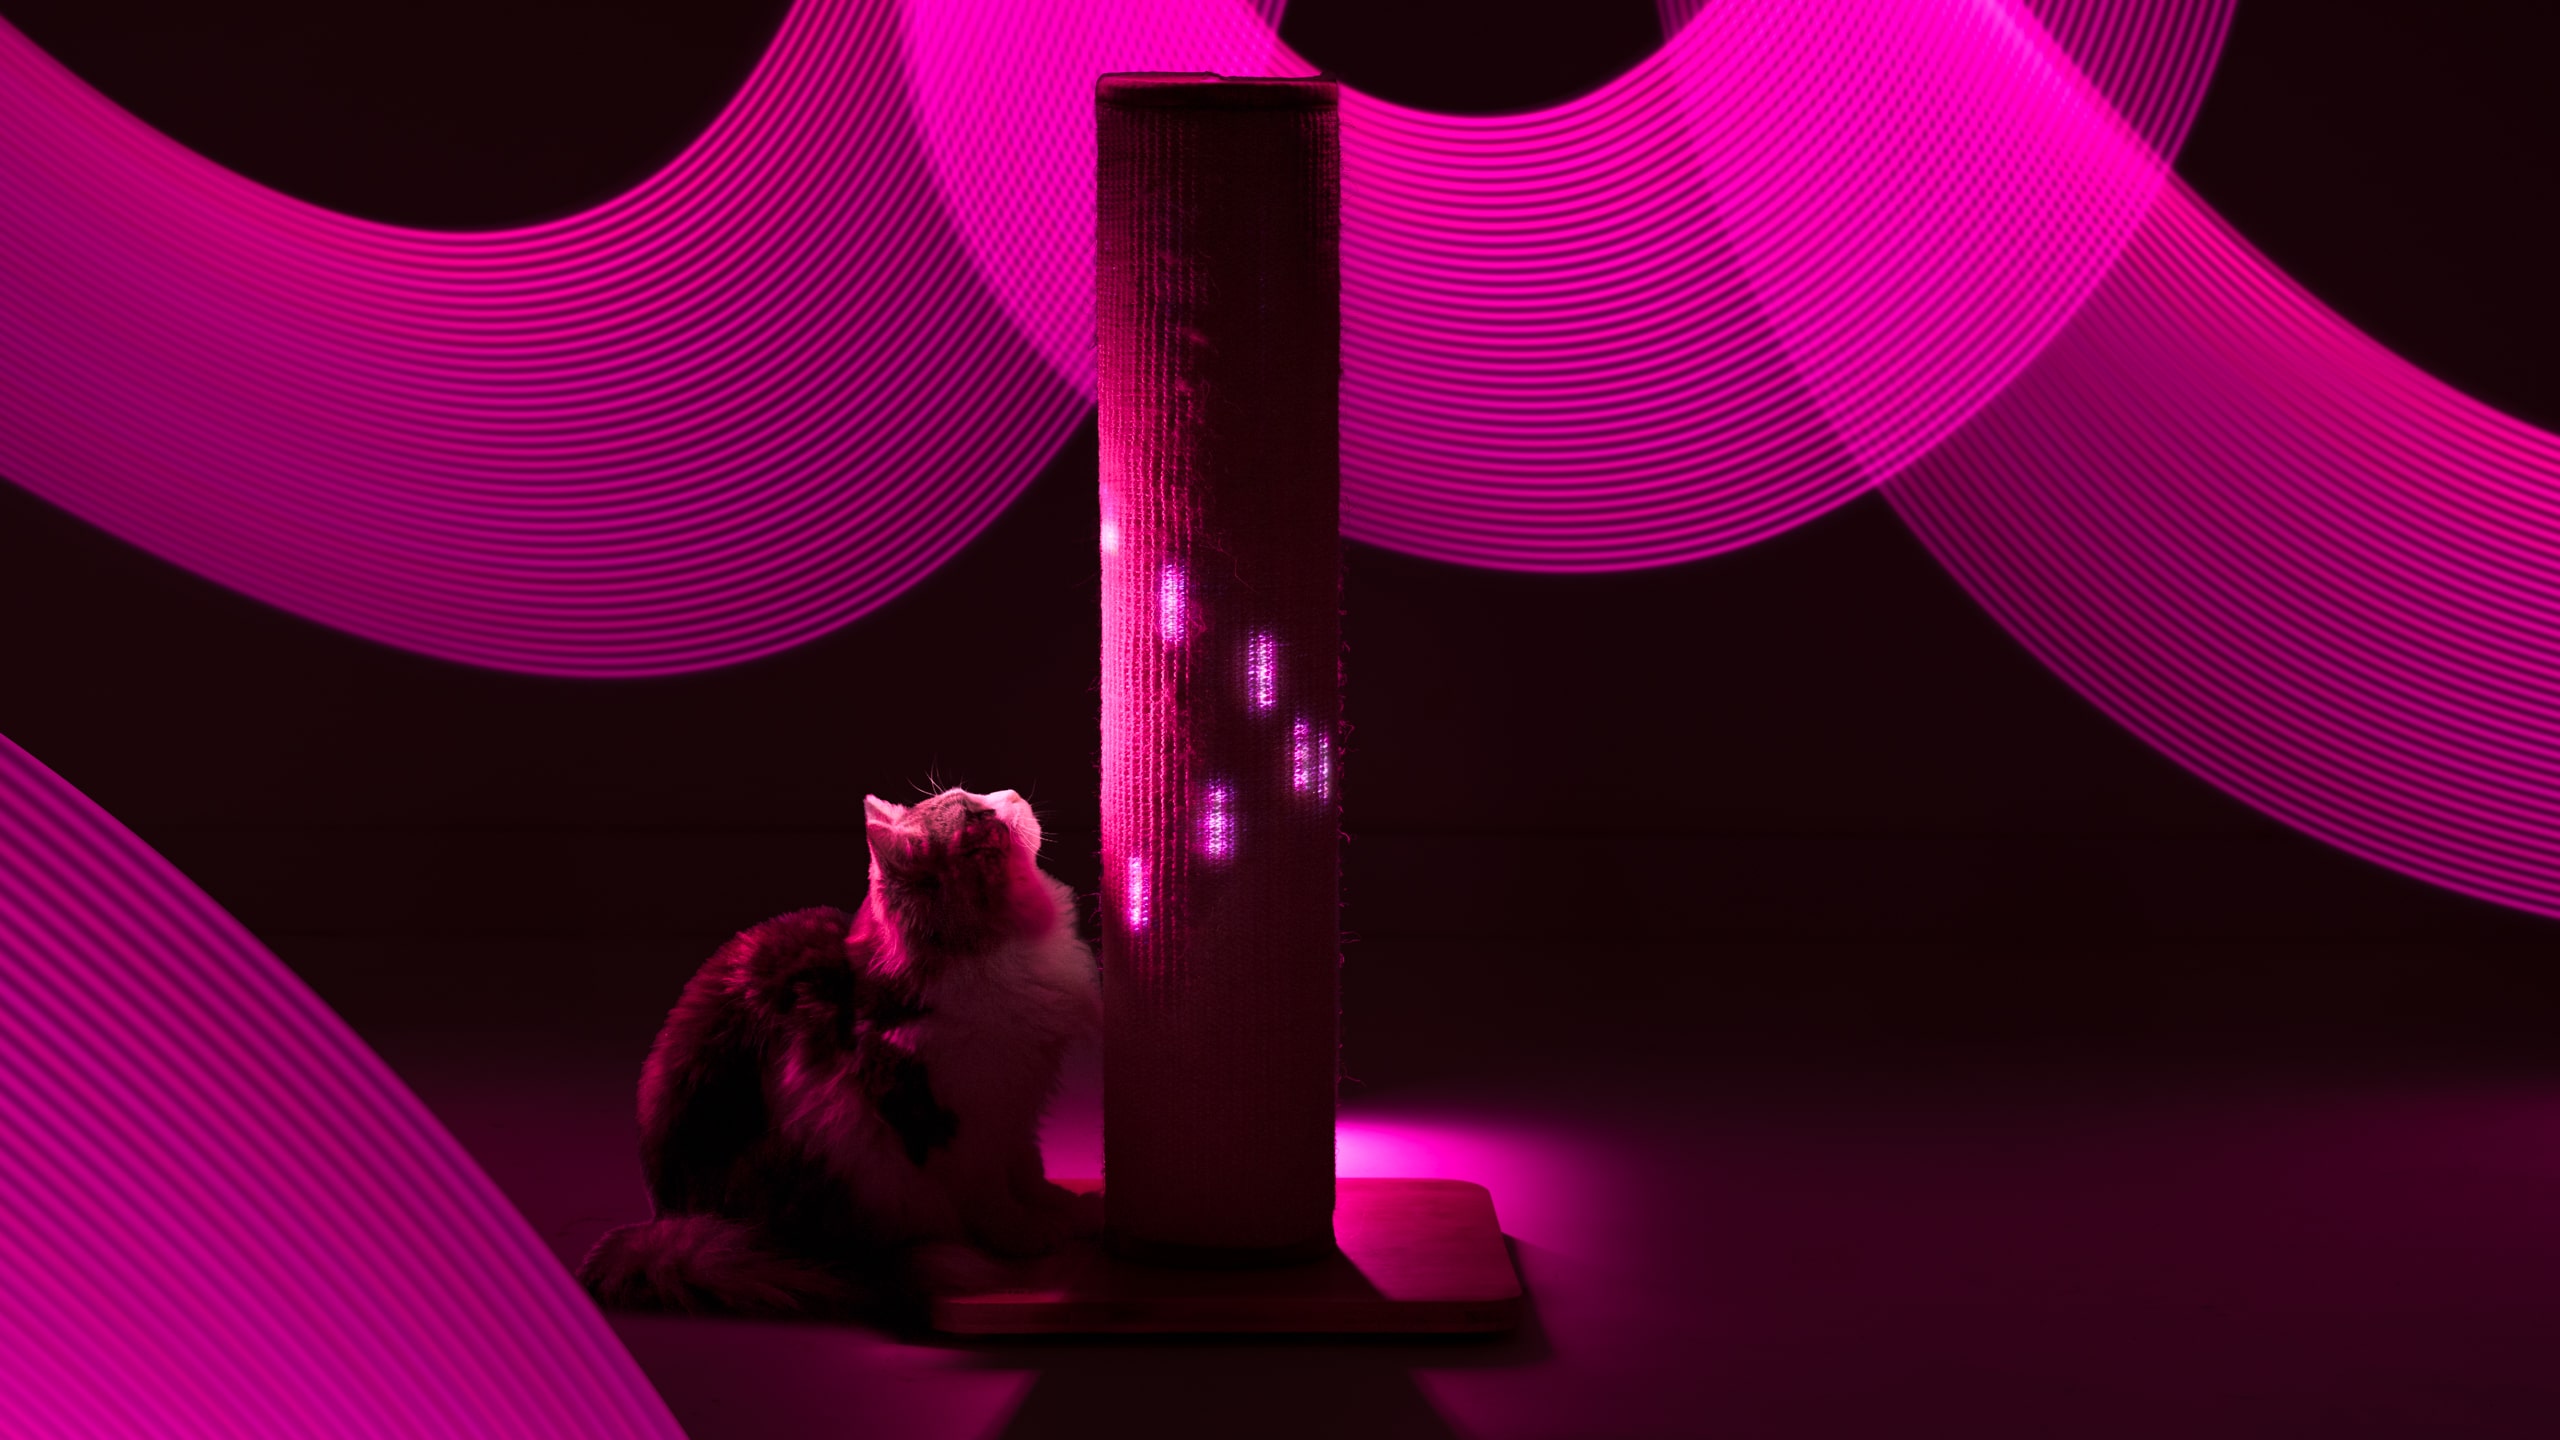 Kat omringd door het roze licht van de Switch krabpaal  